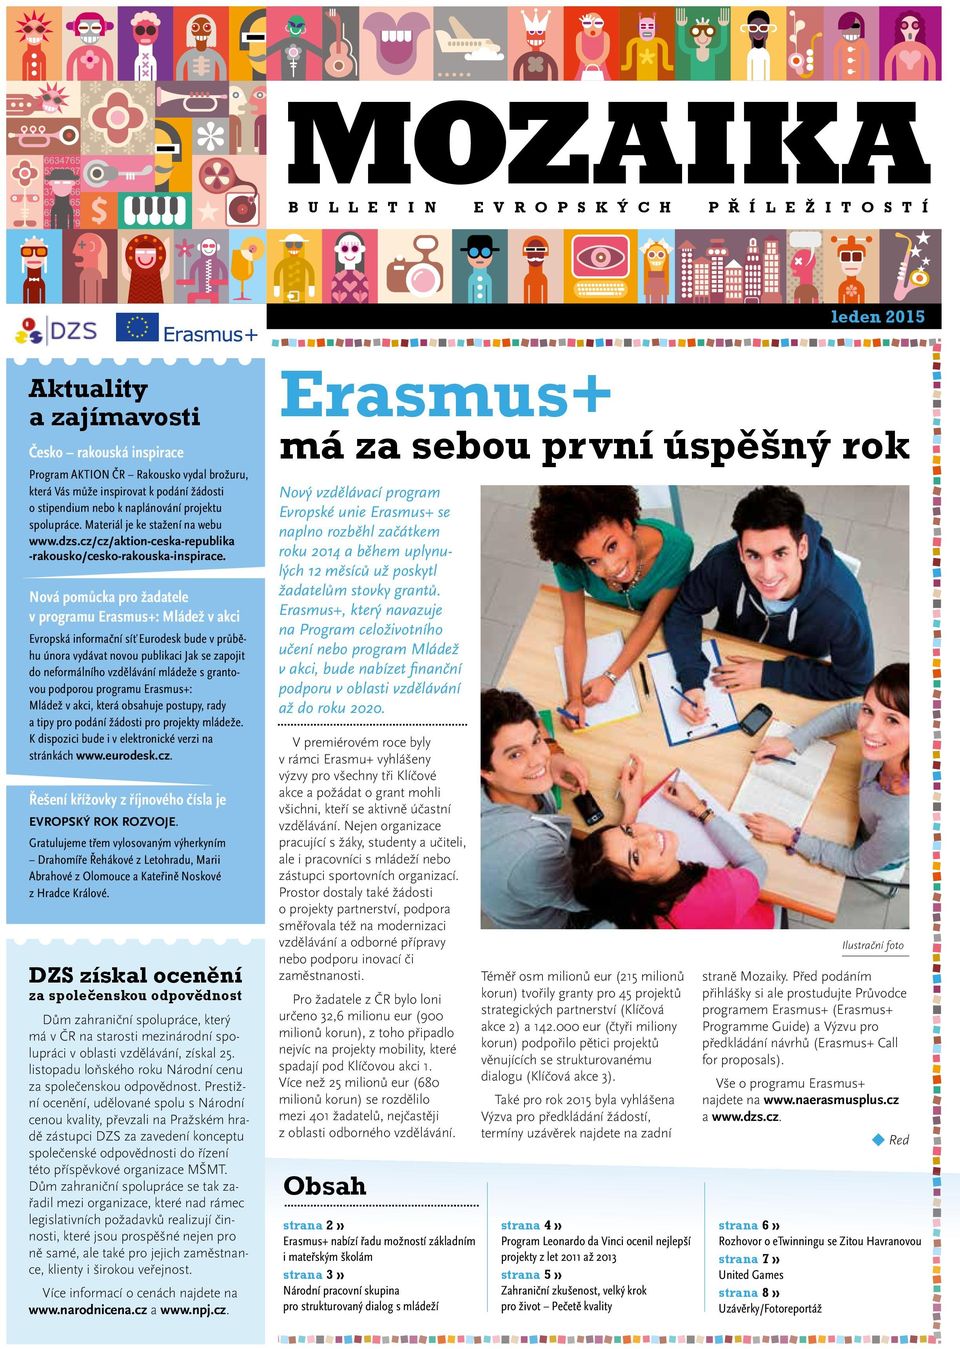 Nová pomůcka pro žadatele v programu Erasmus+: Mládež v akci Evropská informační síť Eurodesk bude v průběhu února vydávat novou publikaci Jak se zapojit do neformálního vzdělávání mládeže s